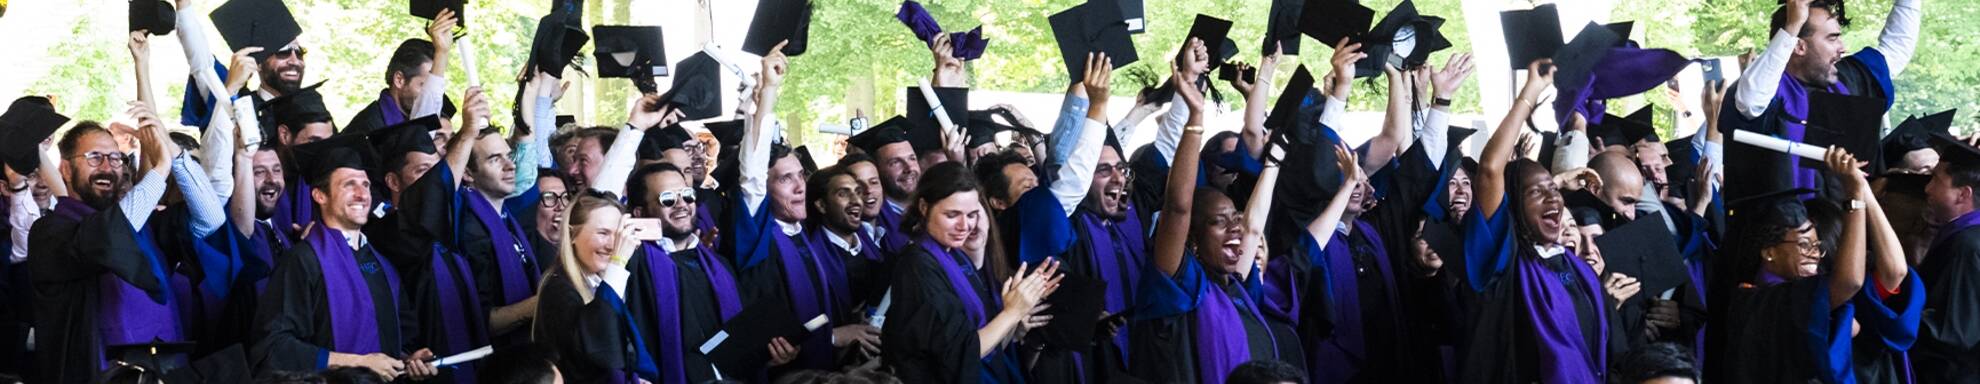 Groupe d'étudiants en robe de graduation célébrant leur cérémonie de remise des diplômes en levant leurs toques noires en l'air, souriants et enthousiastes